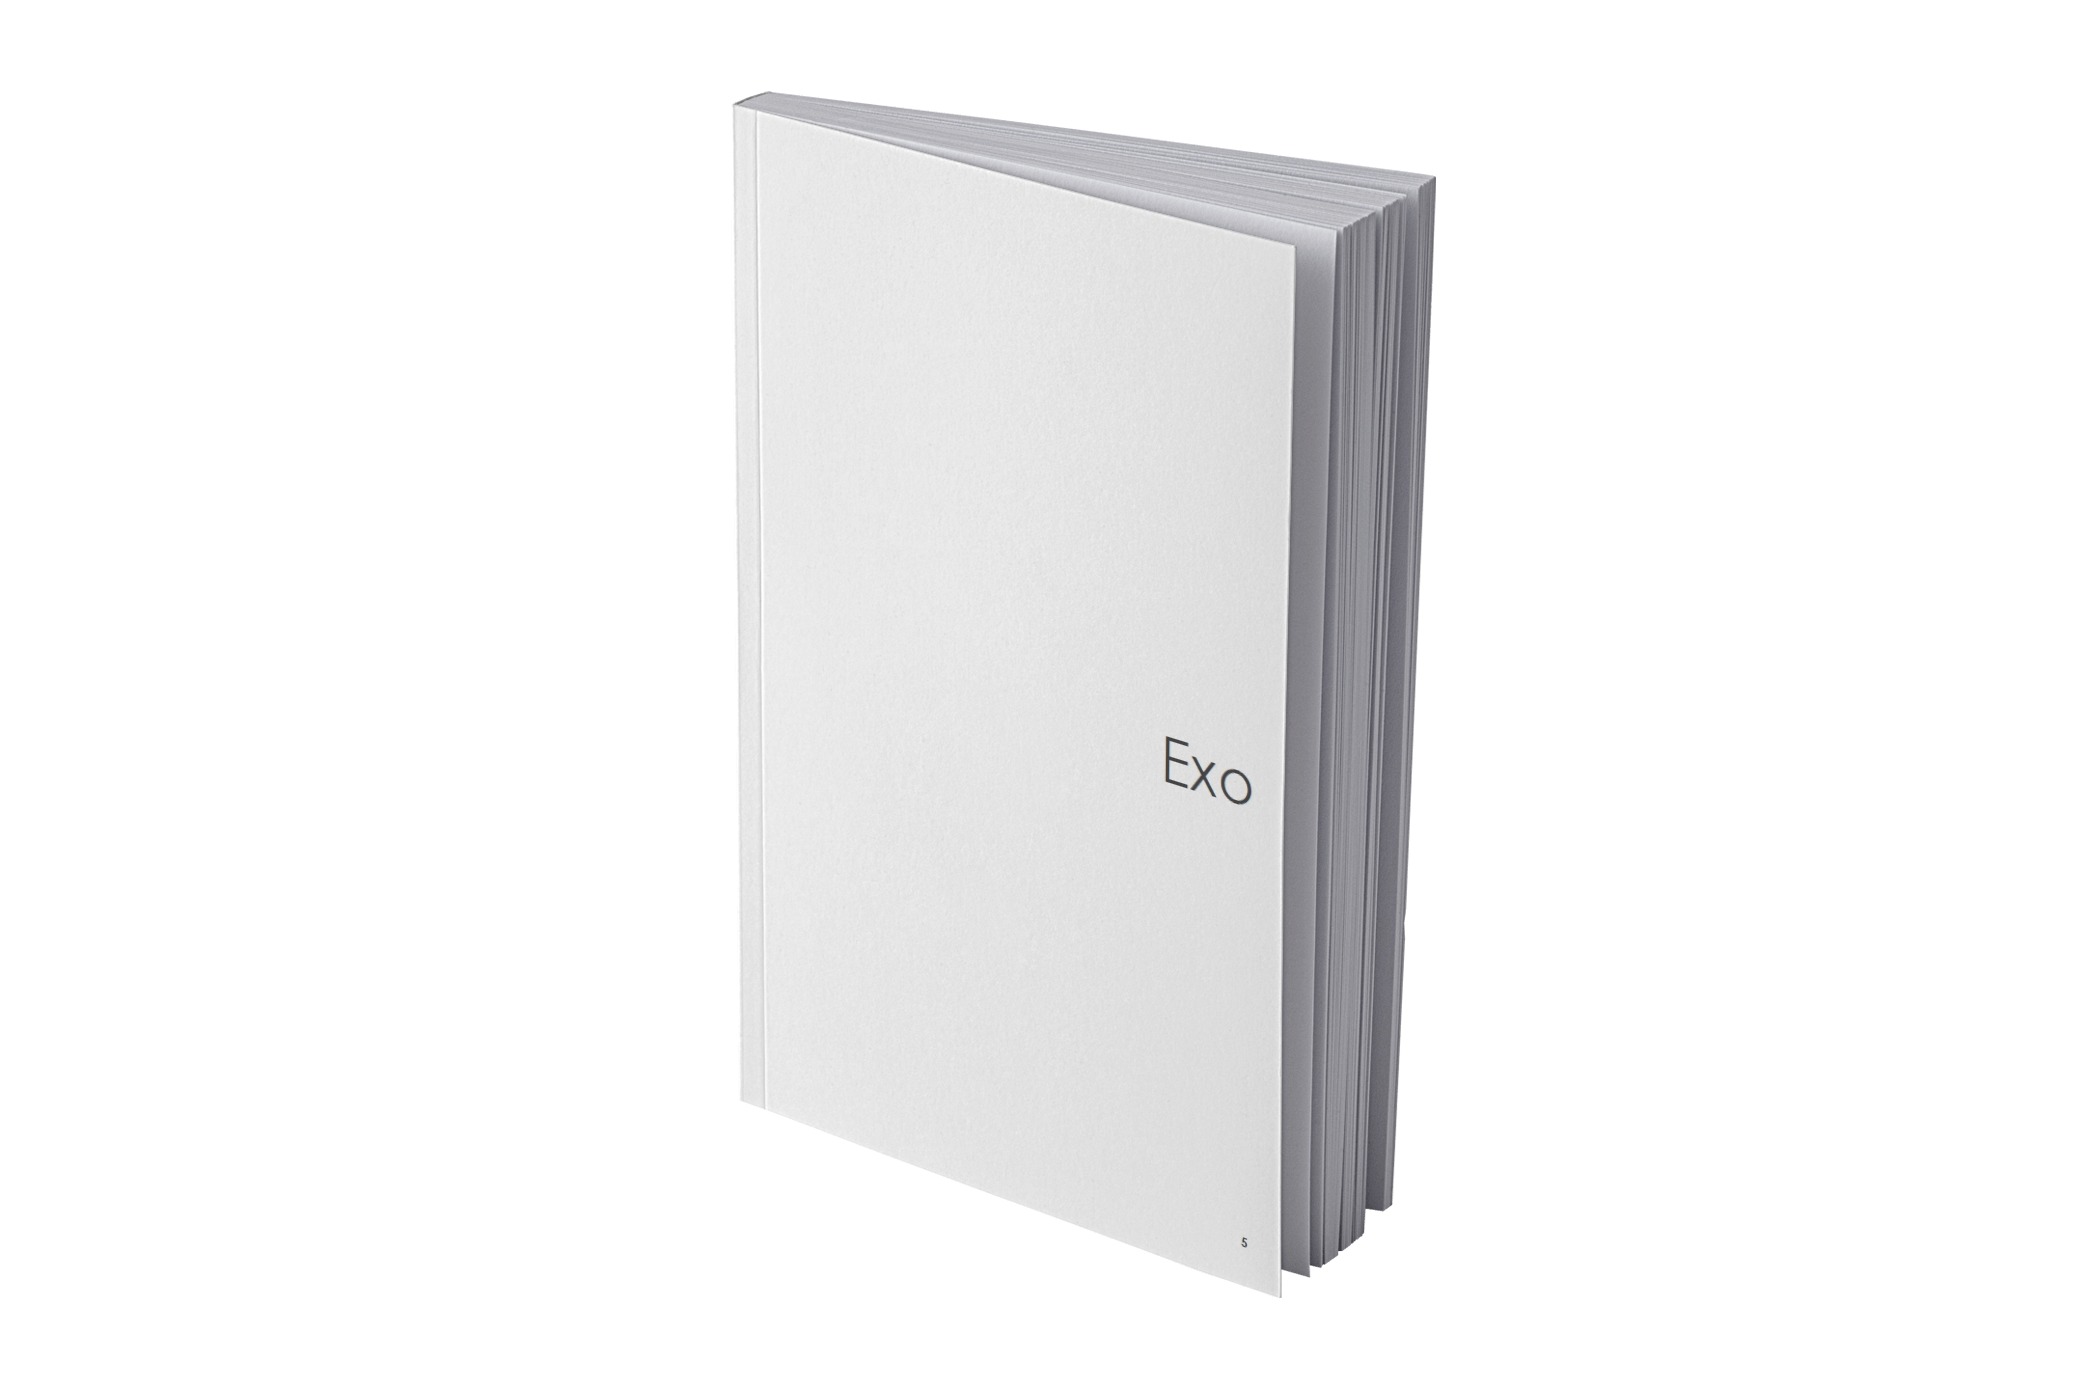 Ikona cennika - książka z napisem Exo będącym nazwą kolekcji.